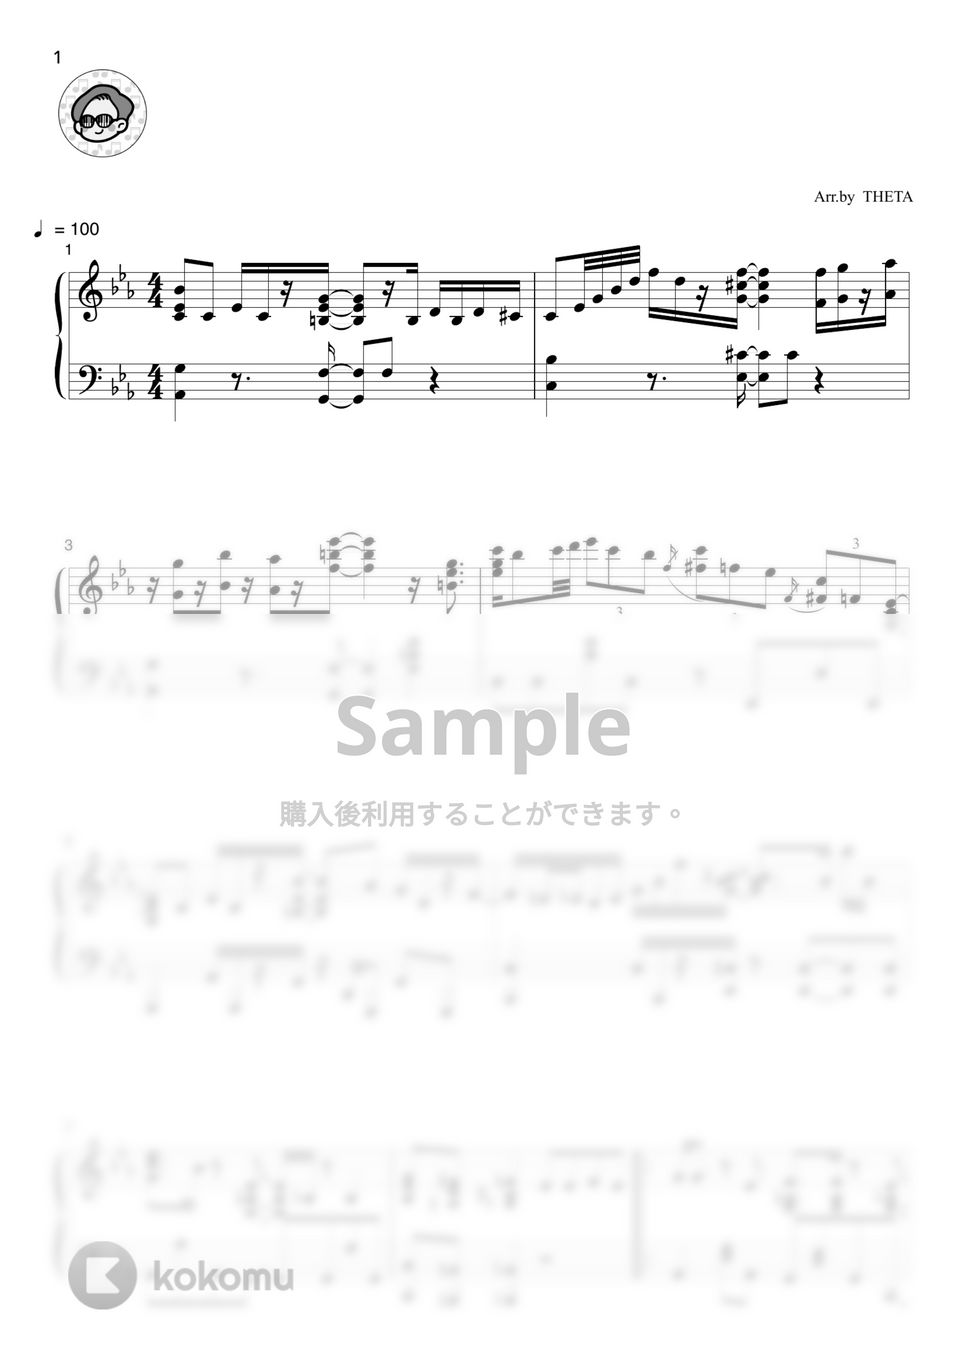 椎名林檎 - 丸の内サディスティック by THETA